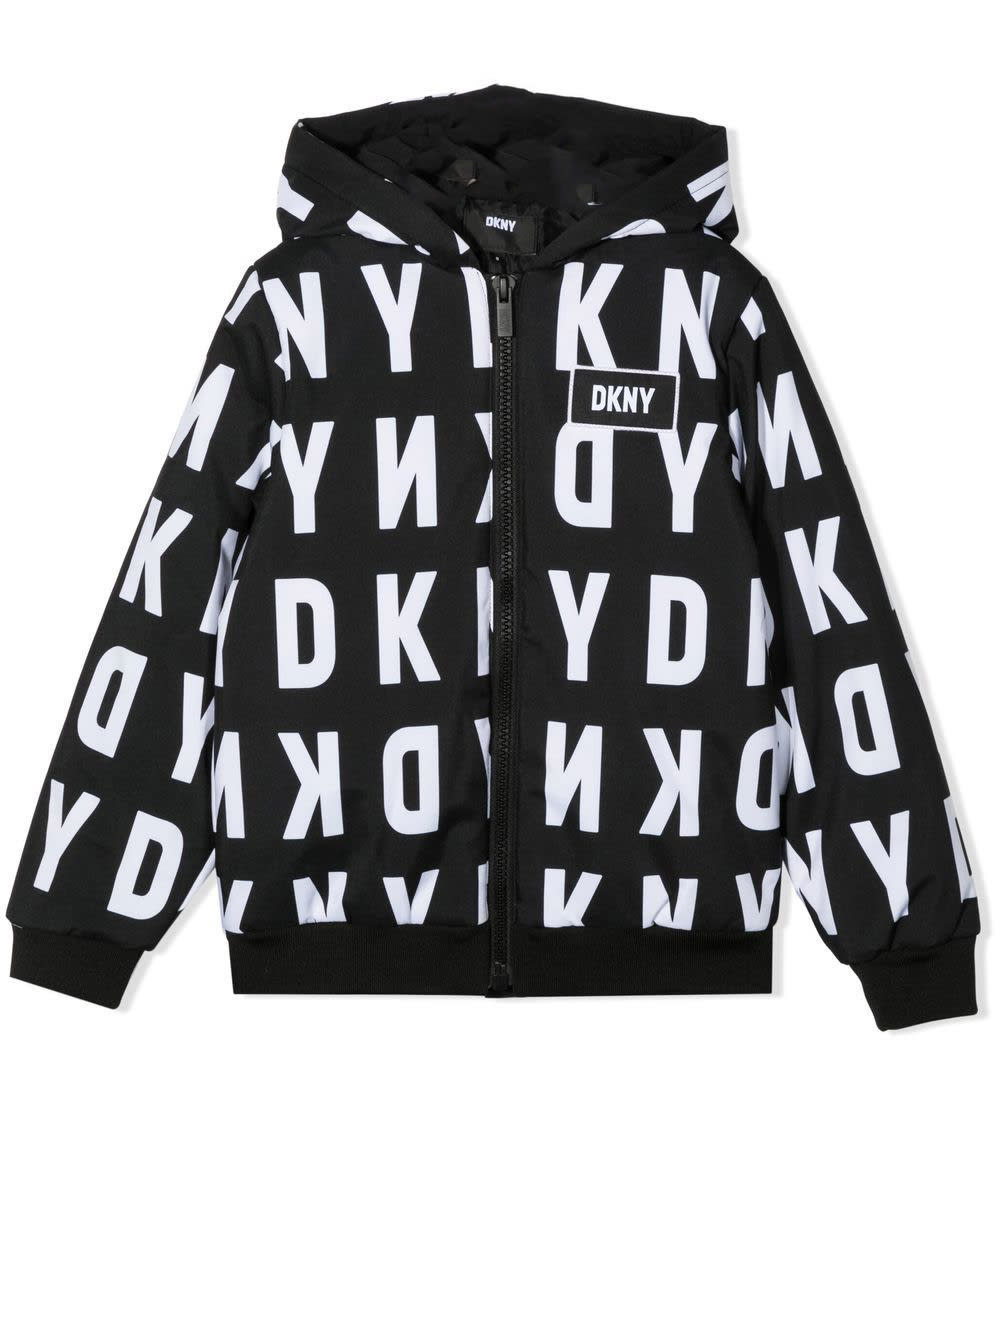 DKNY Jacket With Print